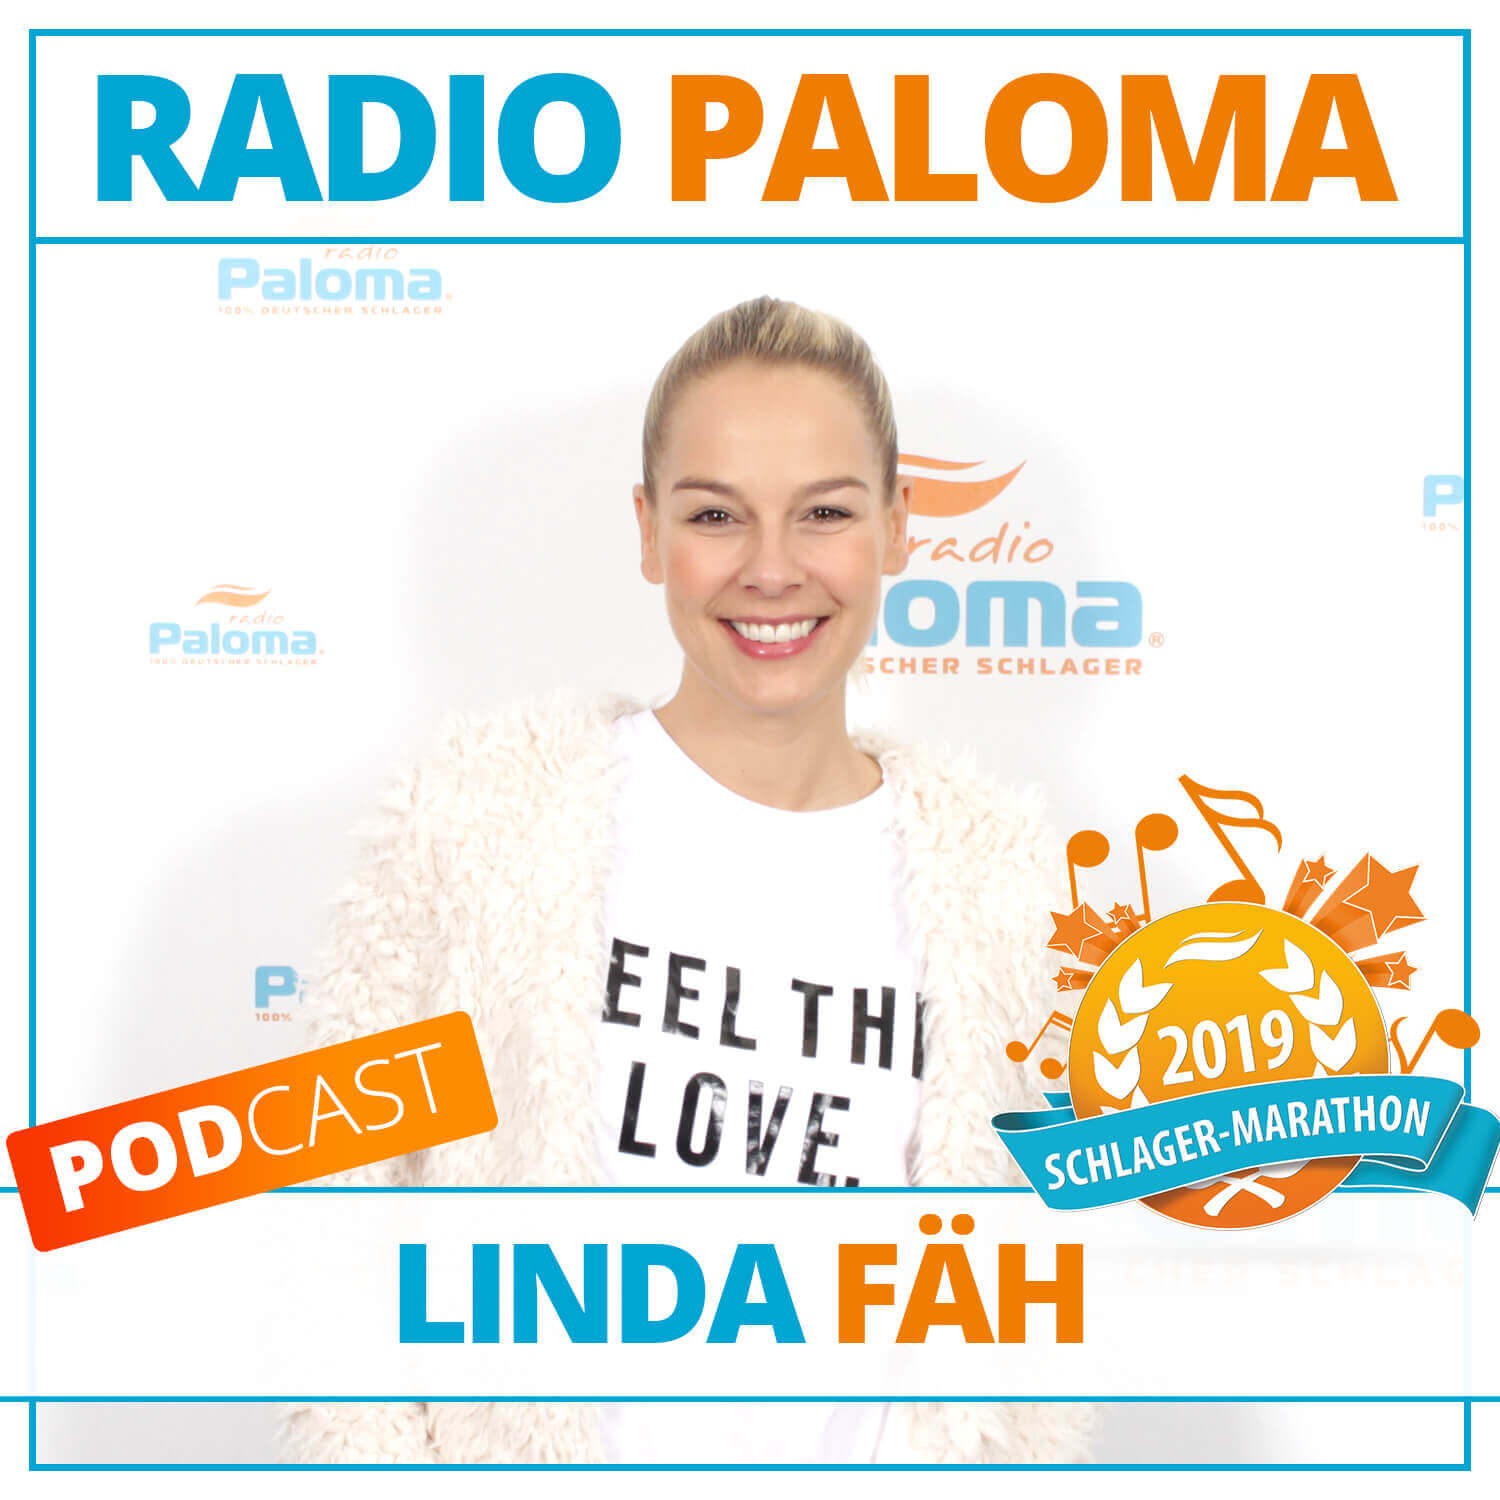 Der Radio Paloma Schlager-Marathon 2019 mit Linda Fäh